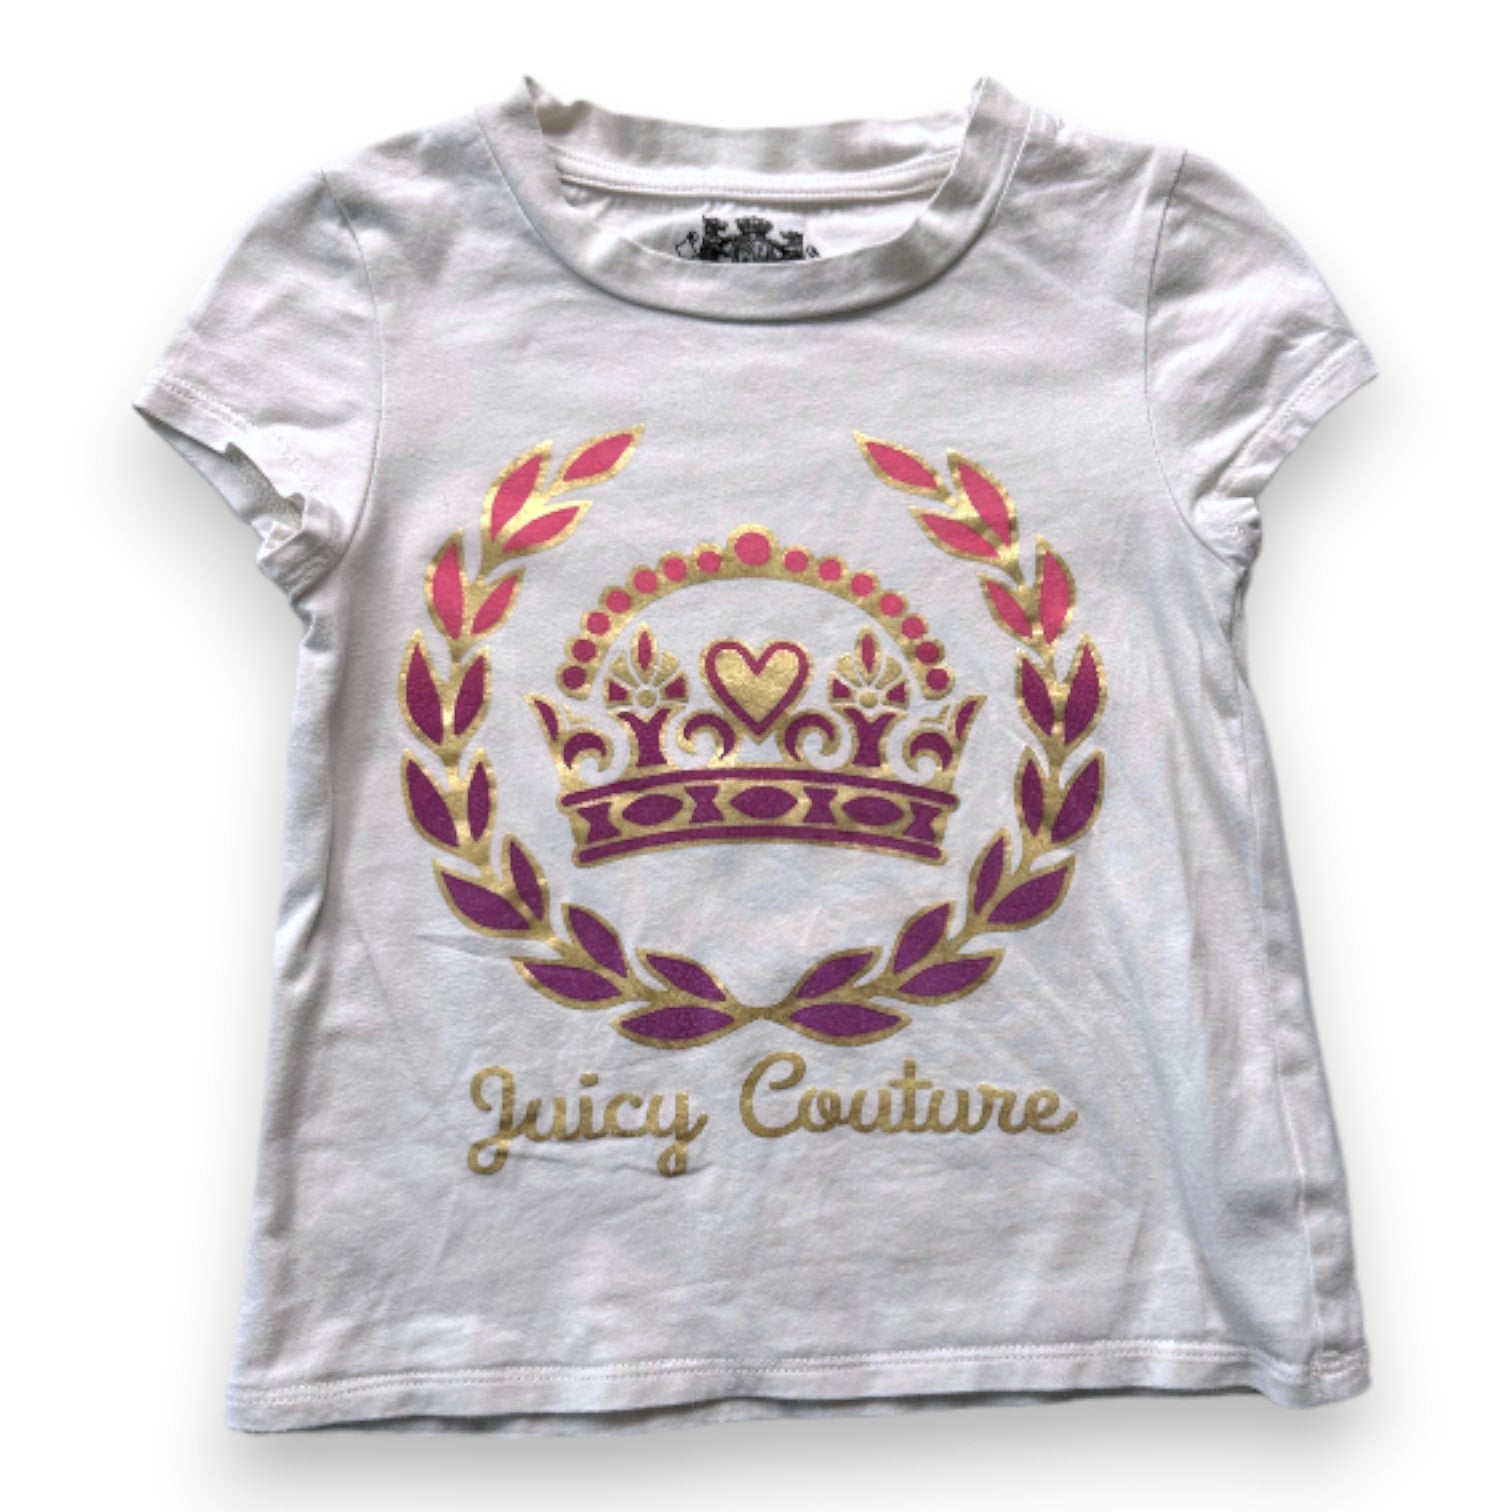 JUICY COUTURE - T-shirt blanc avec imprimés roses et violets - 4 ans